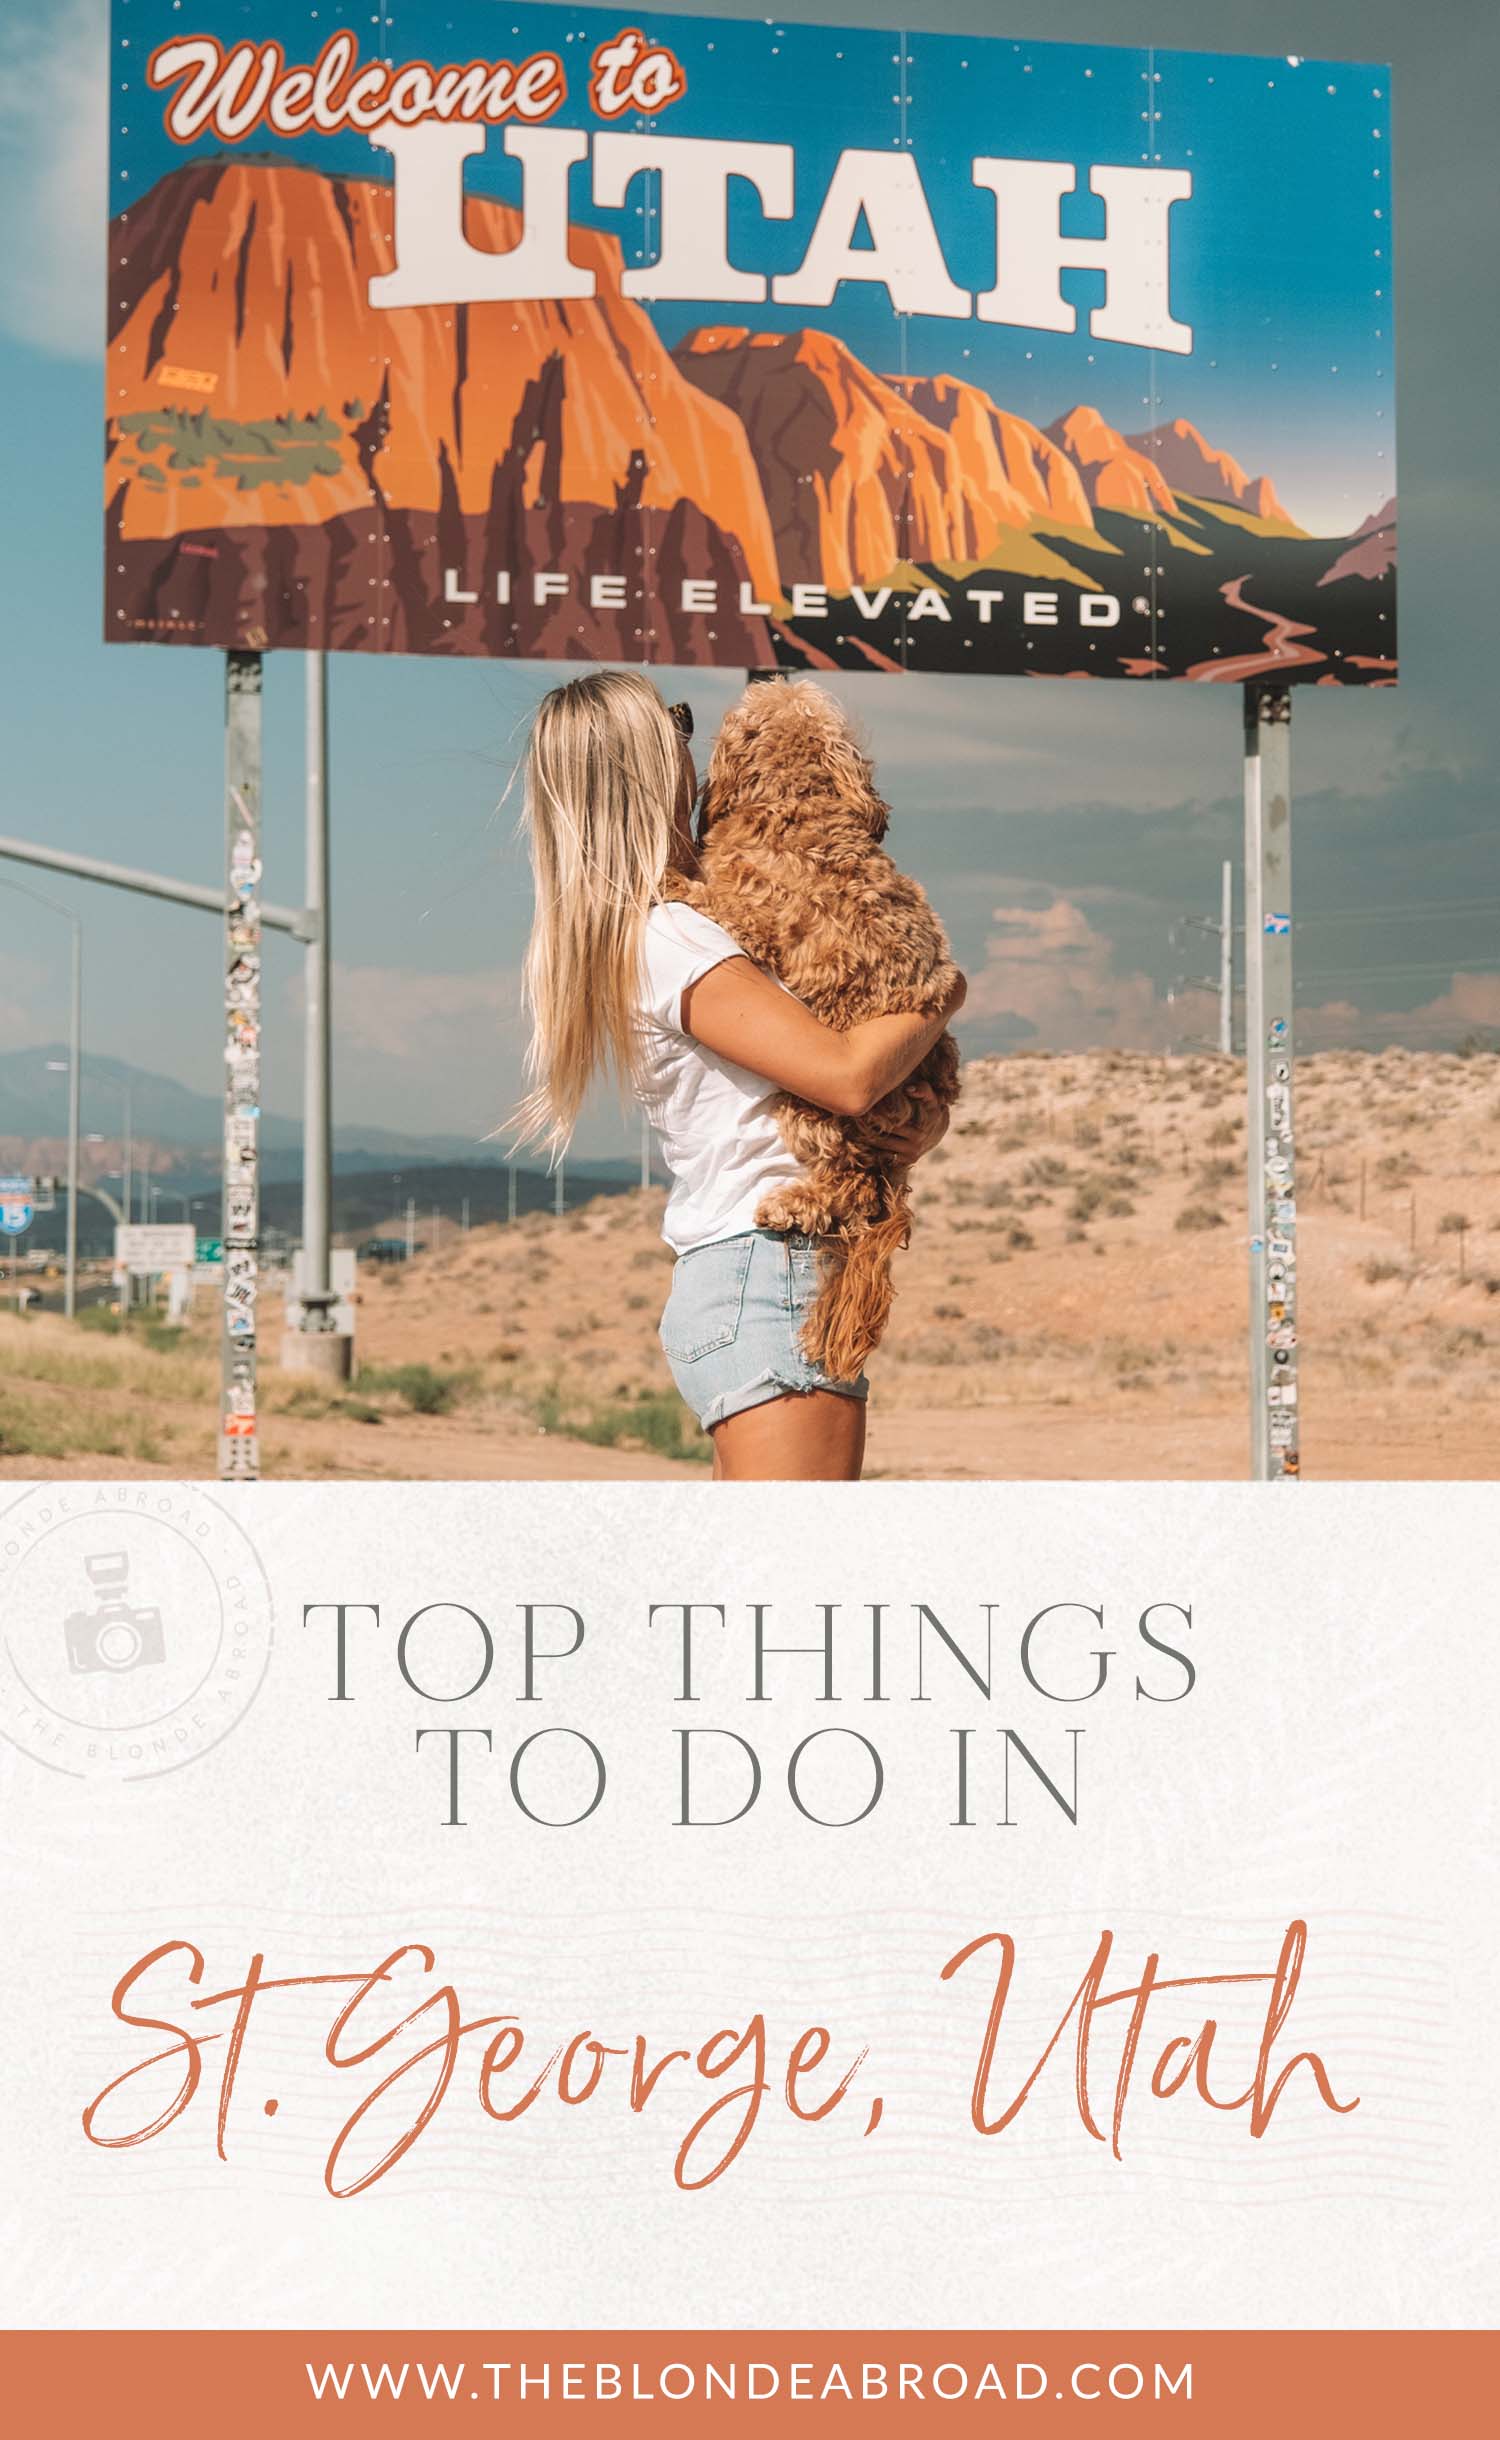 Top Things to Do in St. George Utah